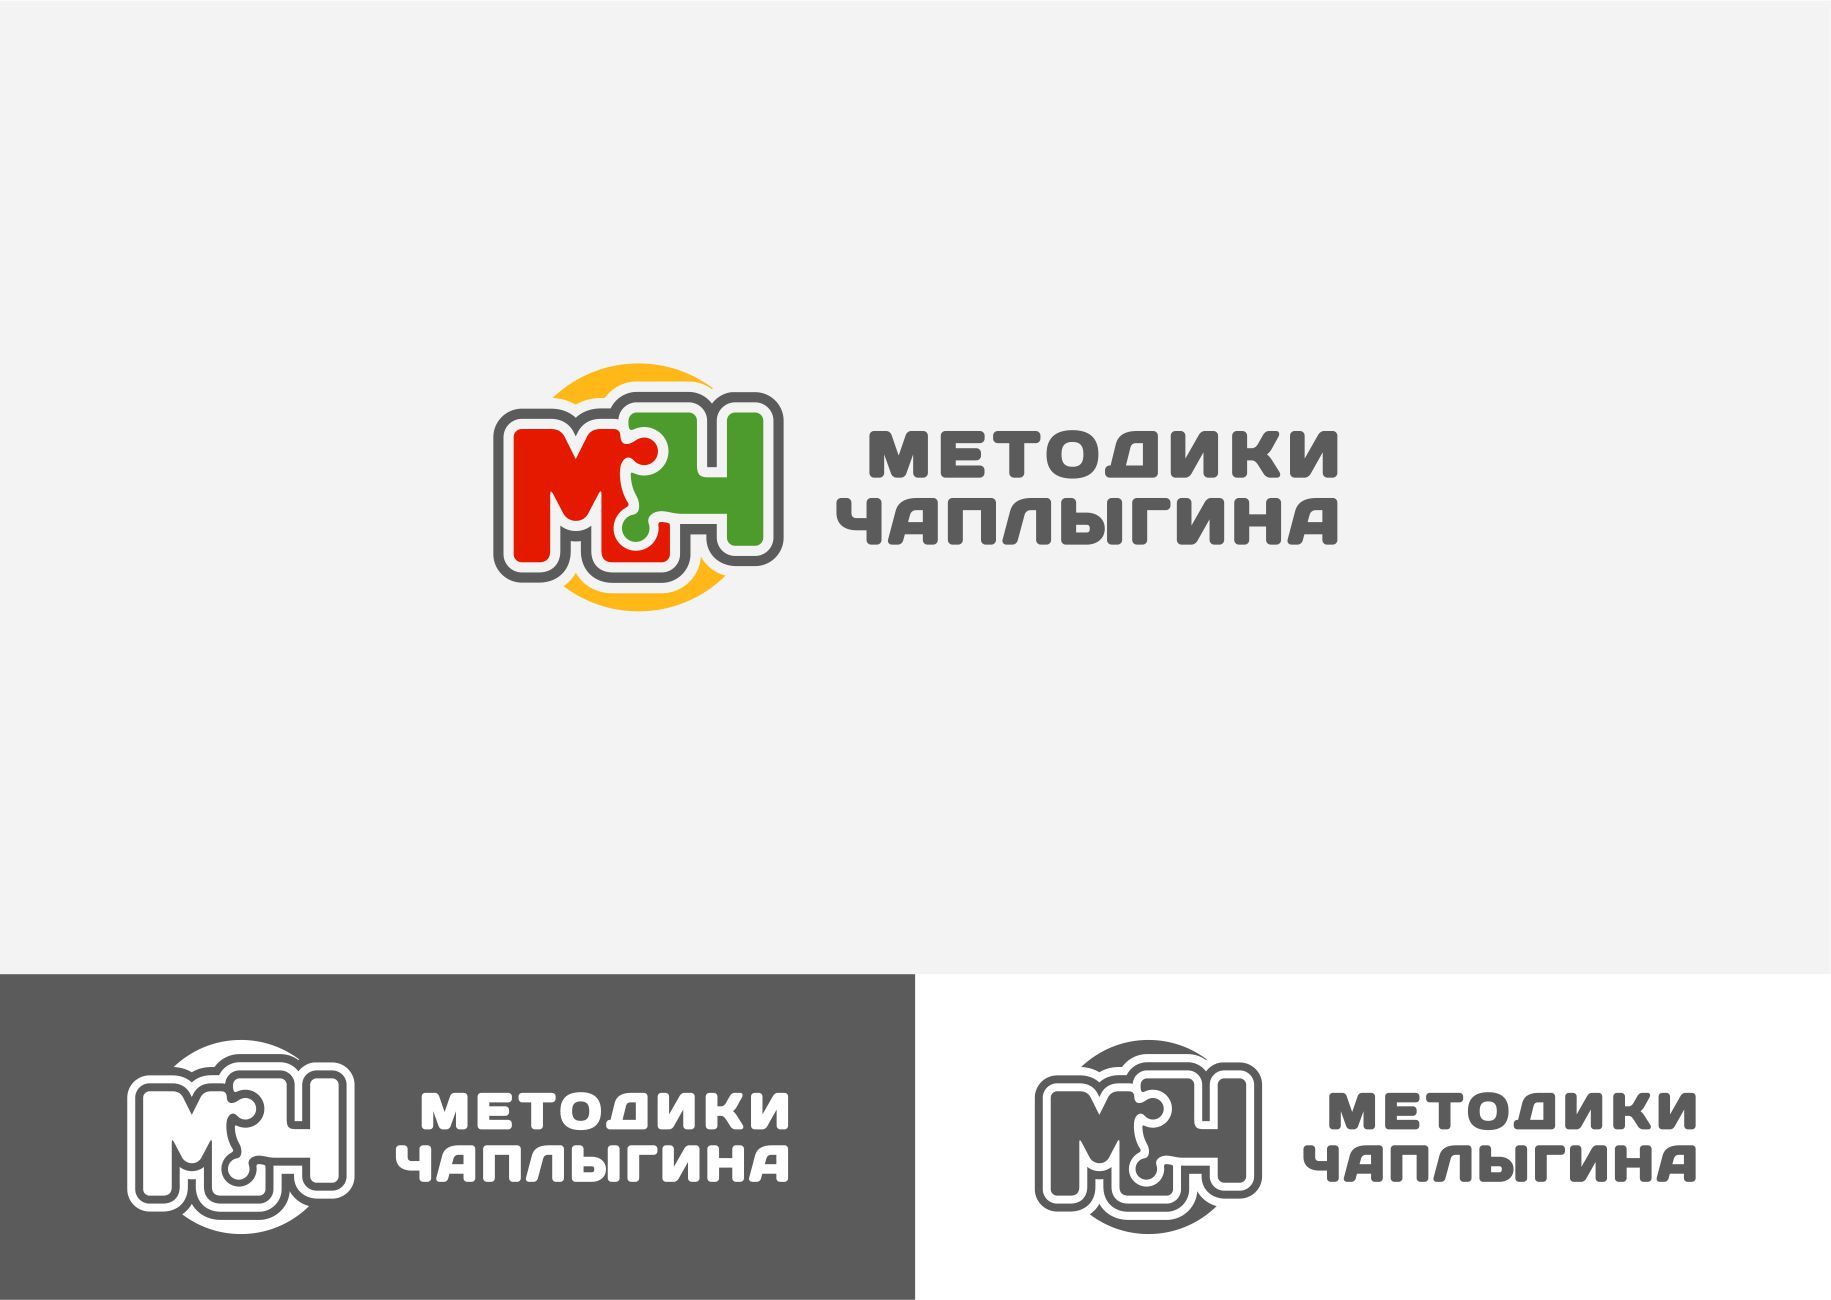 Лого и фирменный стиль для МЕТОДИКИ ЧАПЛЫГИНА - дизайнер graphin4ik